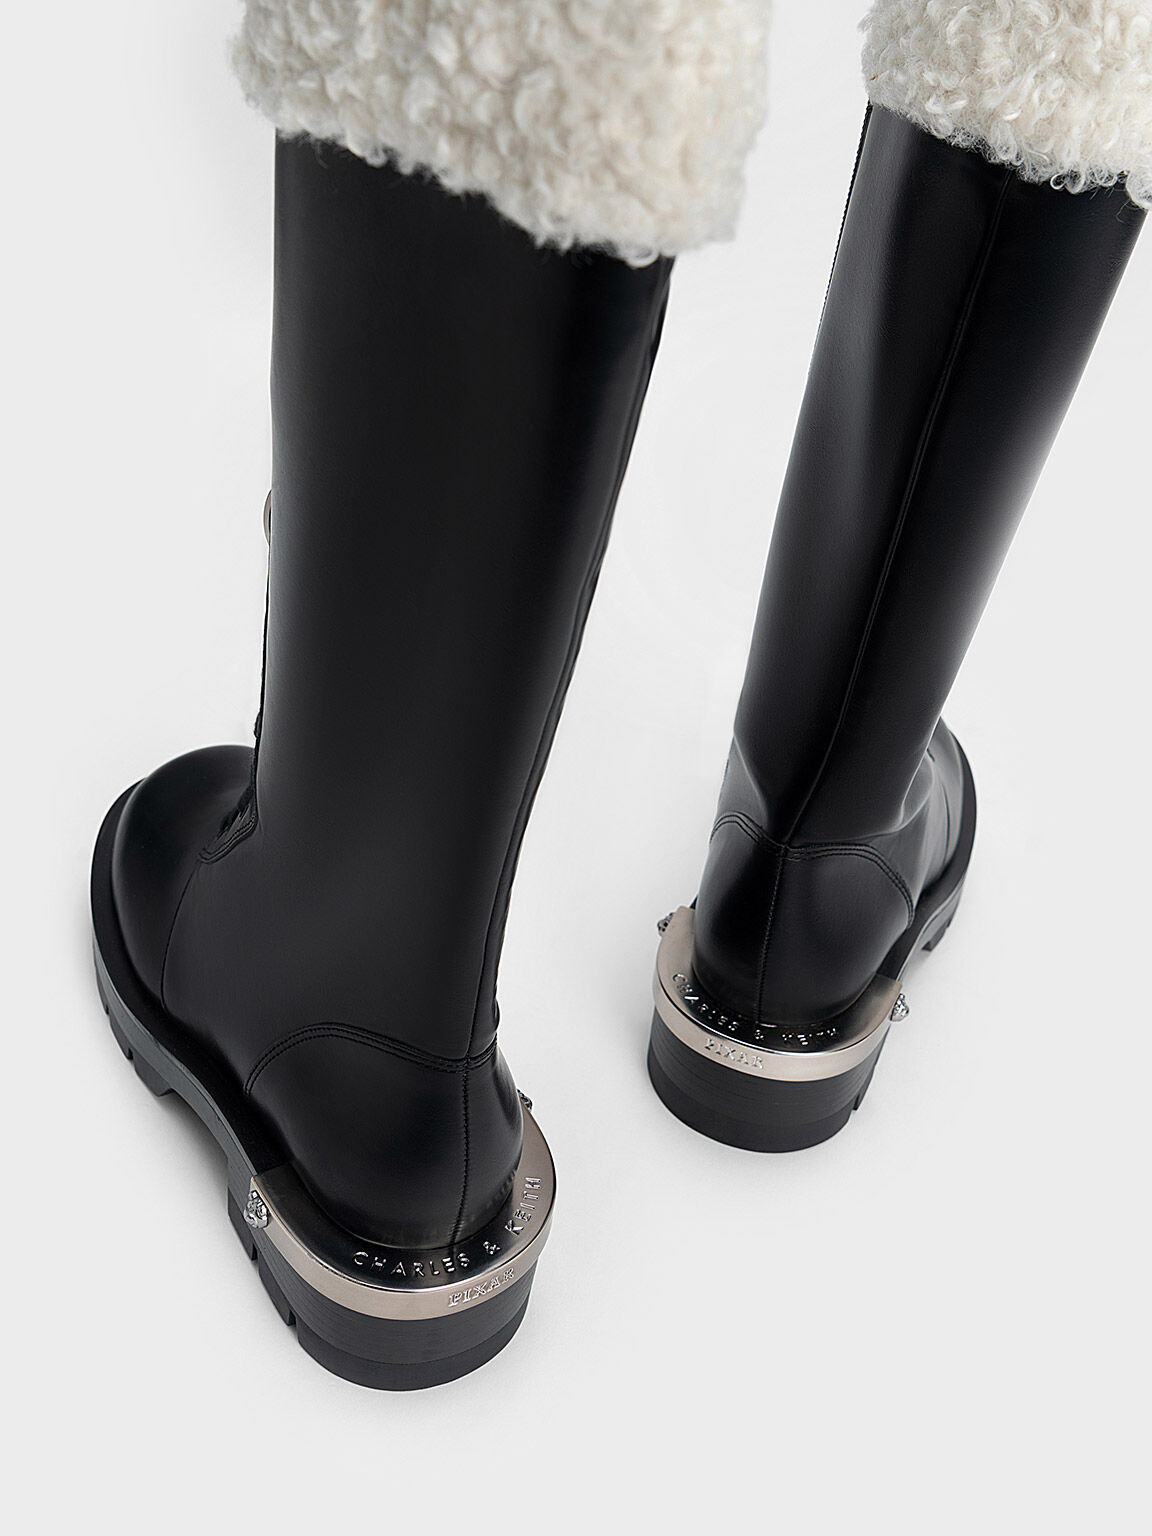 Lotso Furry Knee-High Combat Boots, Black, hi-res